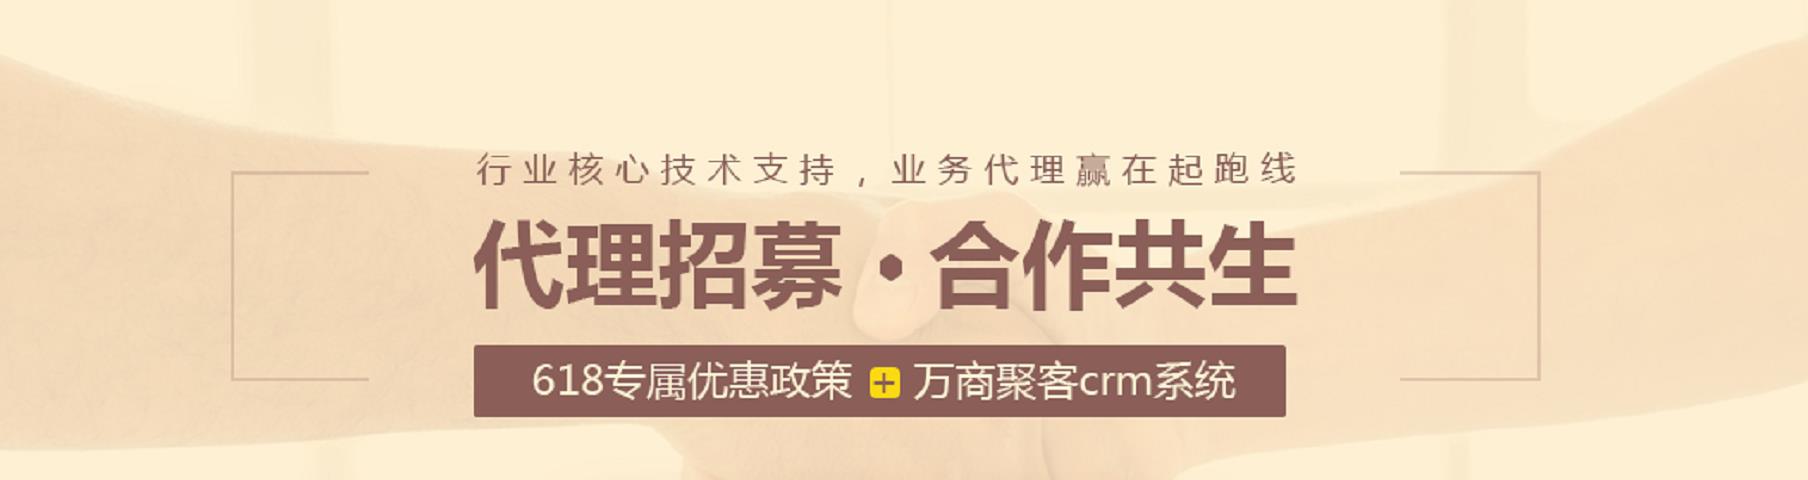 电商推广_618商务服务网站-成都万商云集科技股份有限公司